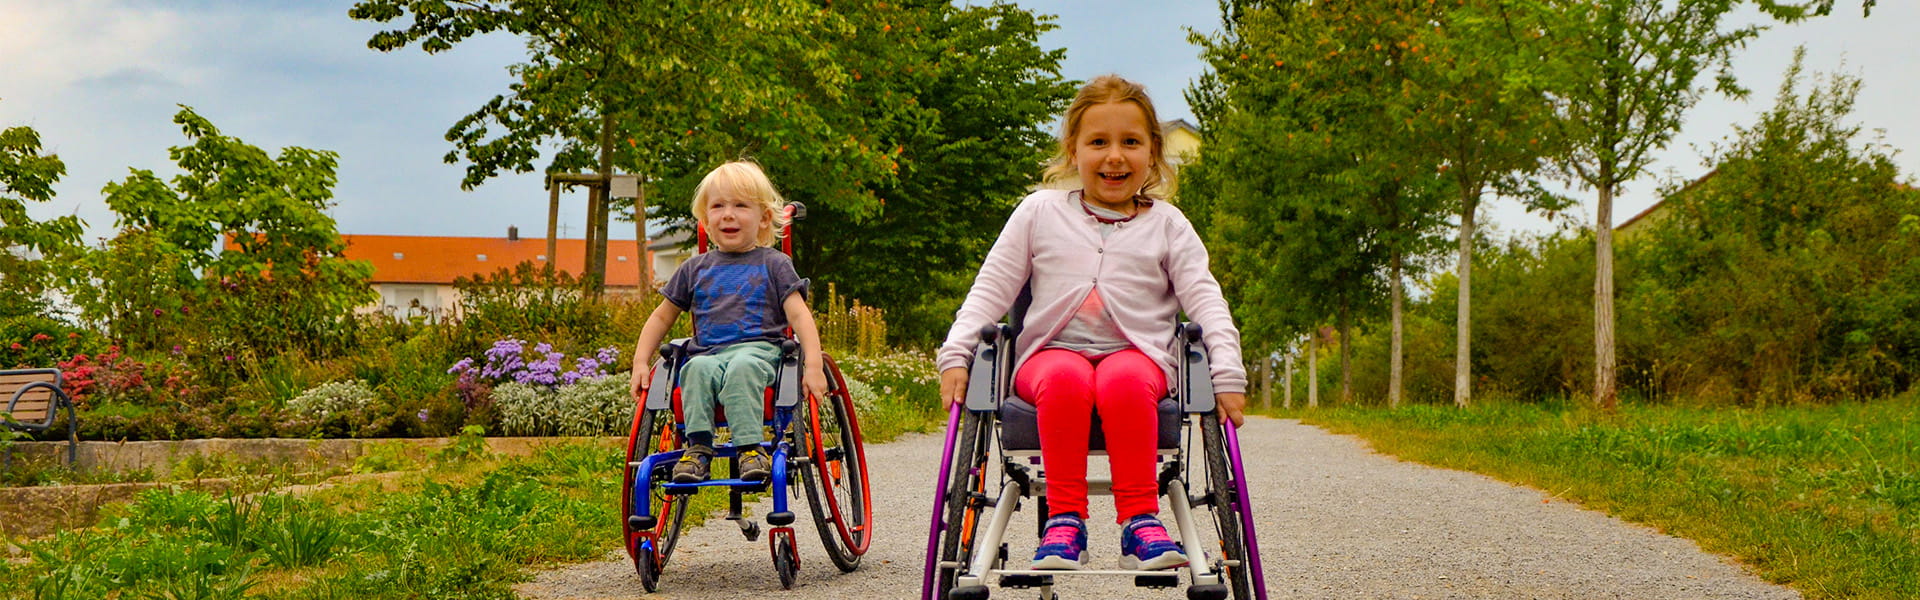 Zwei Kinder im Rollstuhl fahren im Park auf die Kamera zu.